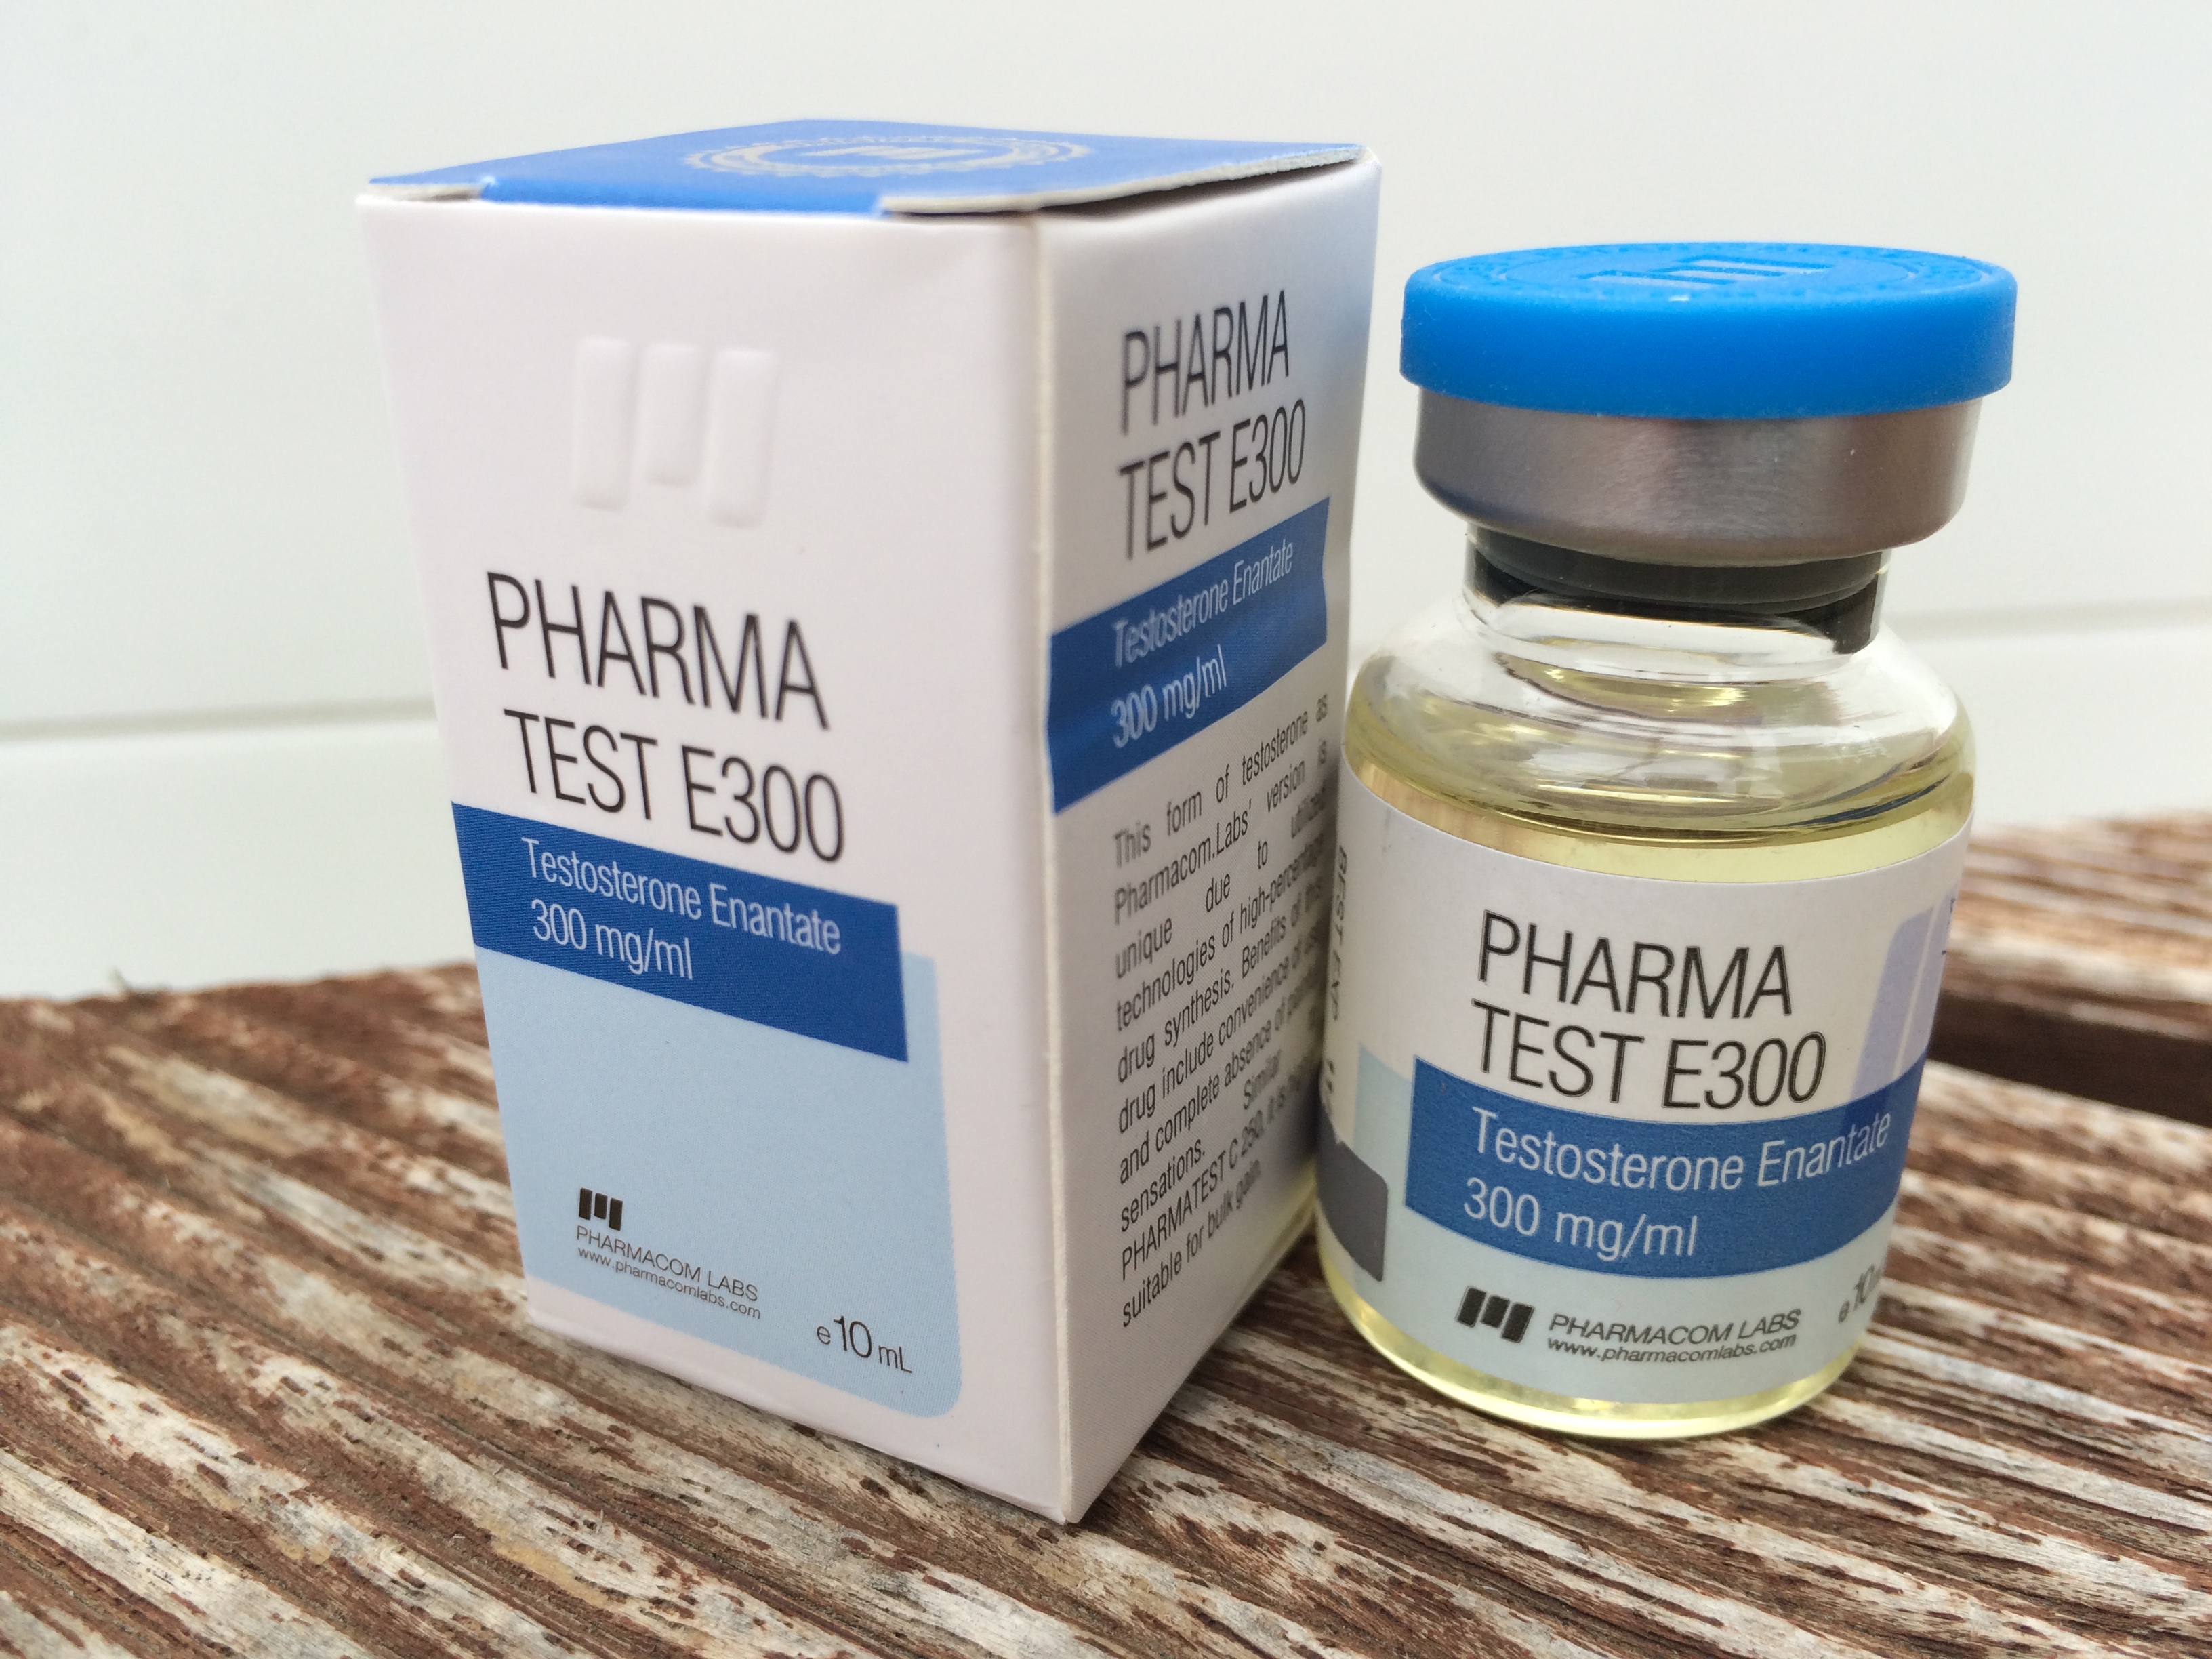 pharmacom-labs-pharma-test-e300-lab-test-results-anabolic-lab